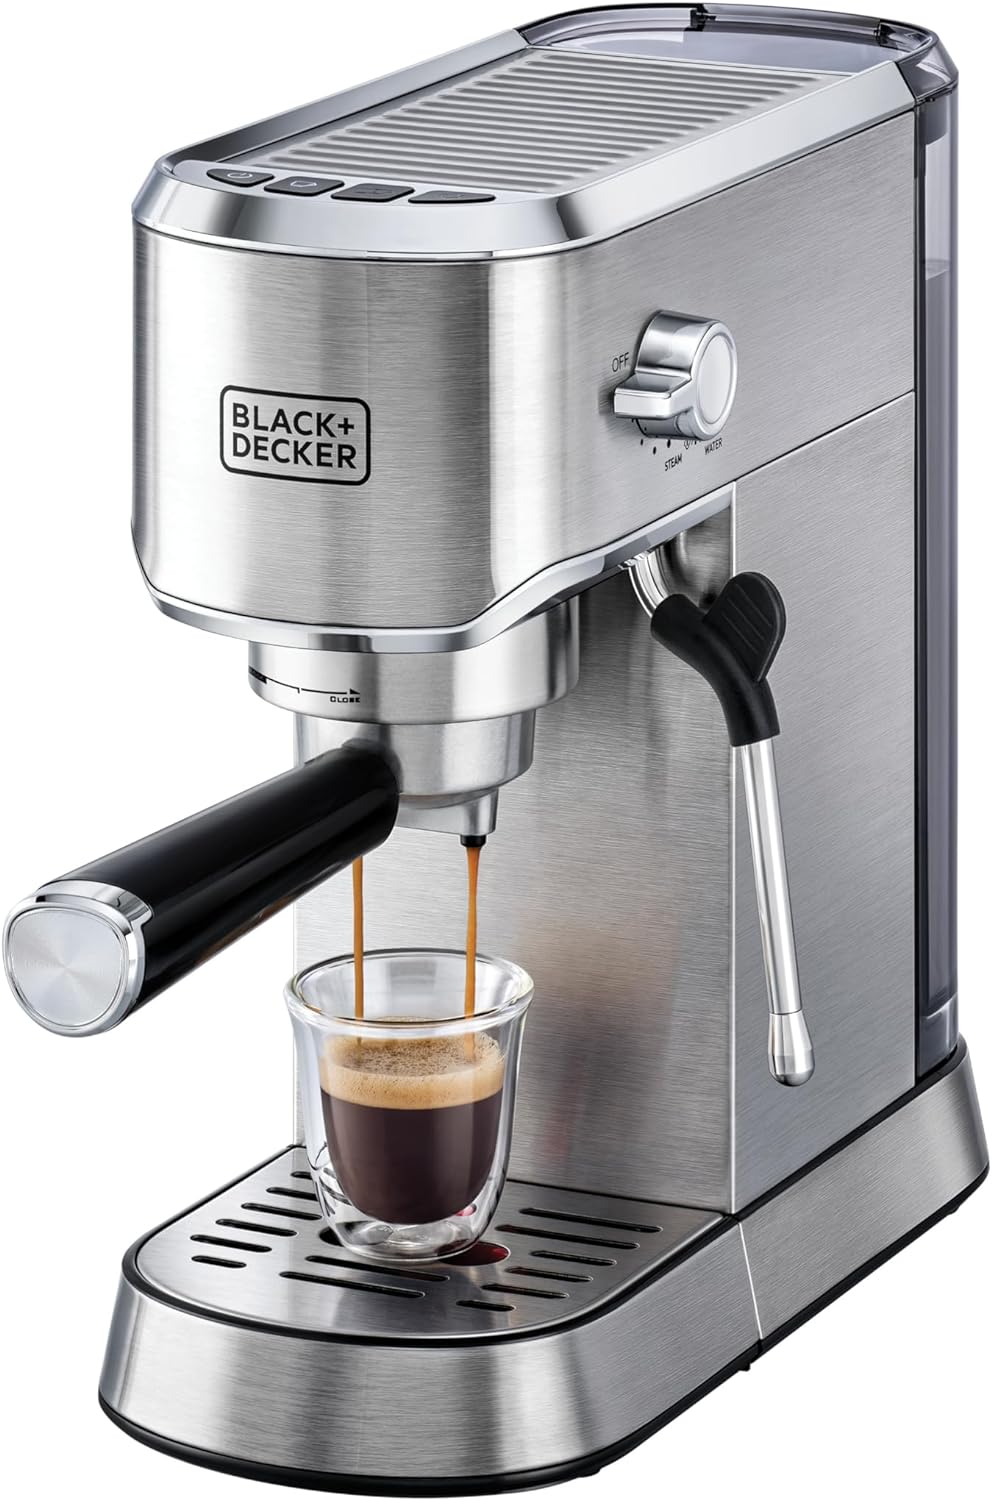 دستگاه قهوه ساز اسپرسو پمپ باریستا بلک اند دکر مدل BLACK+DECKER ECM150 - ارسال ۱۰ الی ۱۵ روز کاری